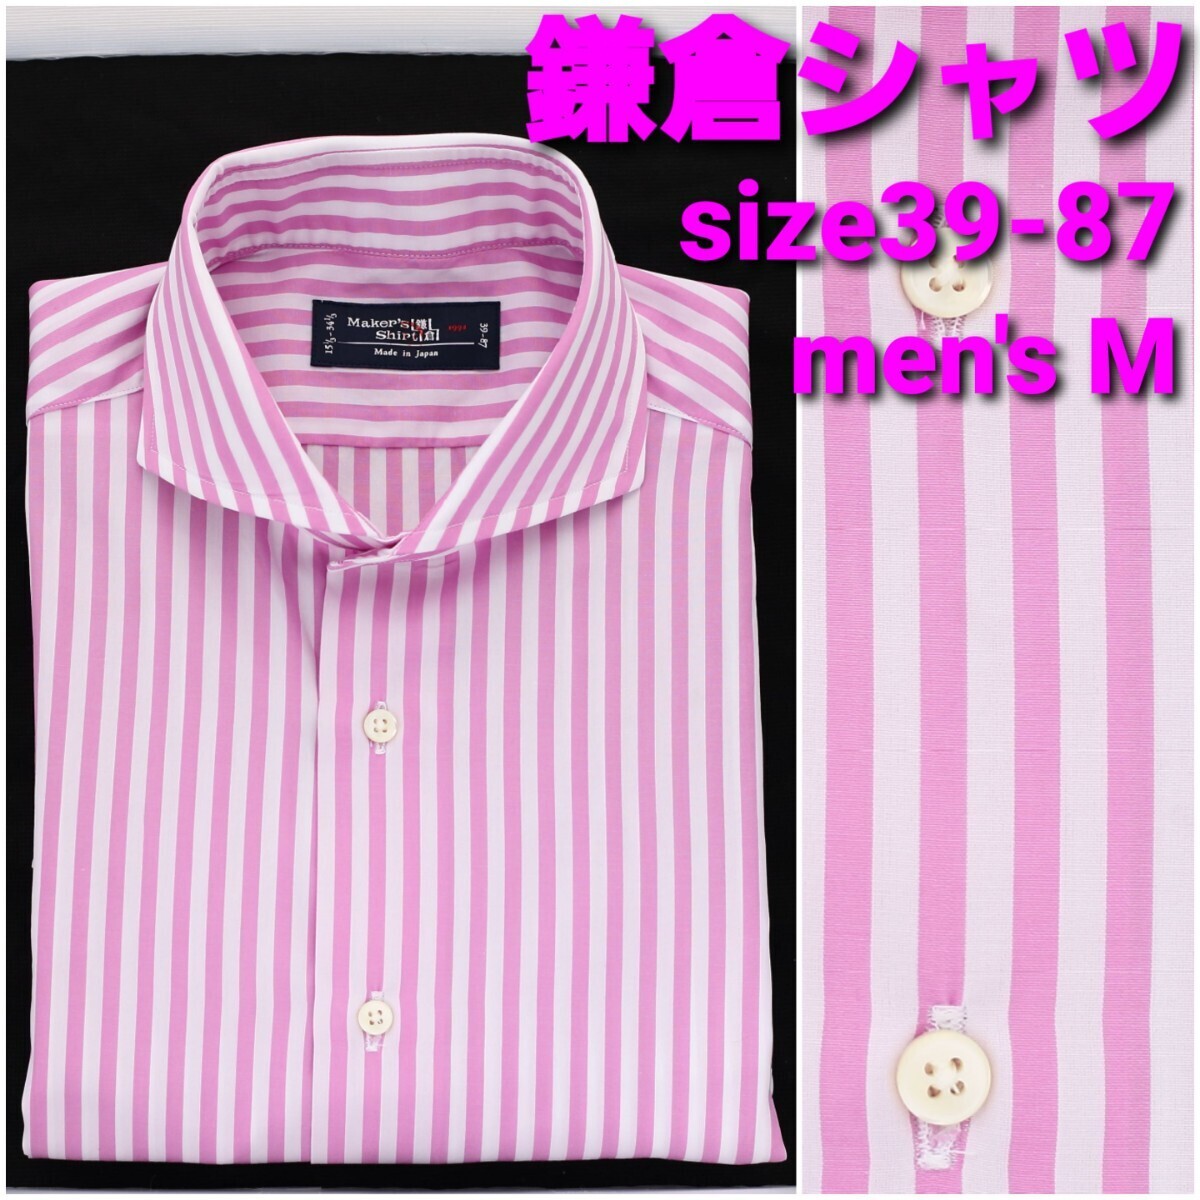 【B級新品】鎌倉シャツ ビジネス/ドレスシャツ サイズ39-87 メンズMホリゾンタルカラー ストライプの画像1